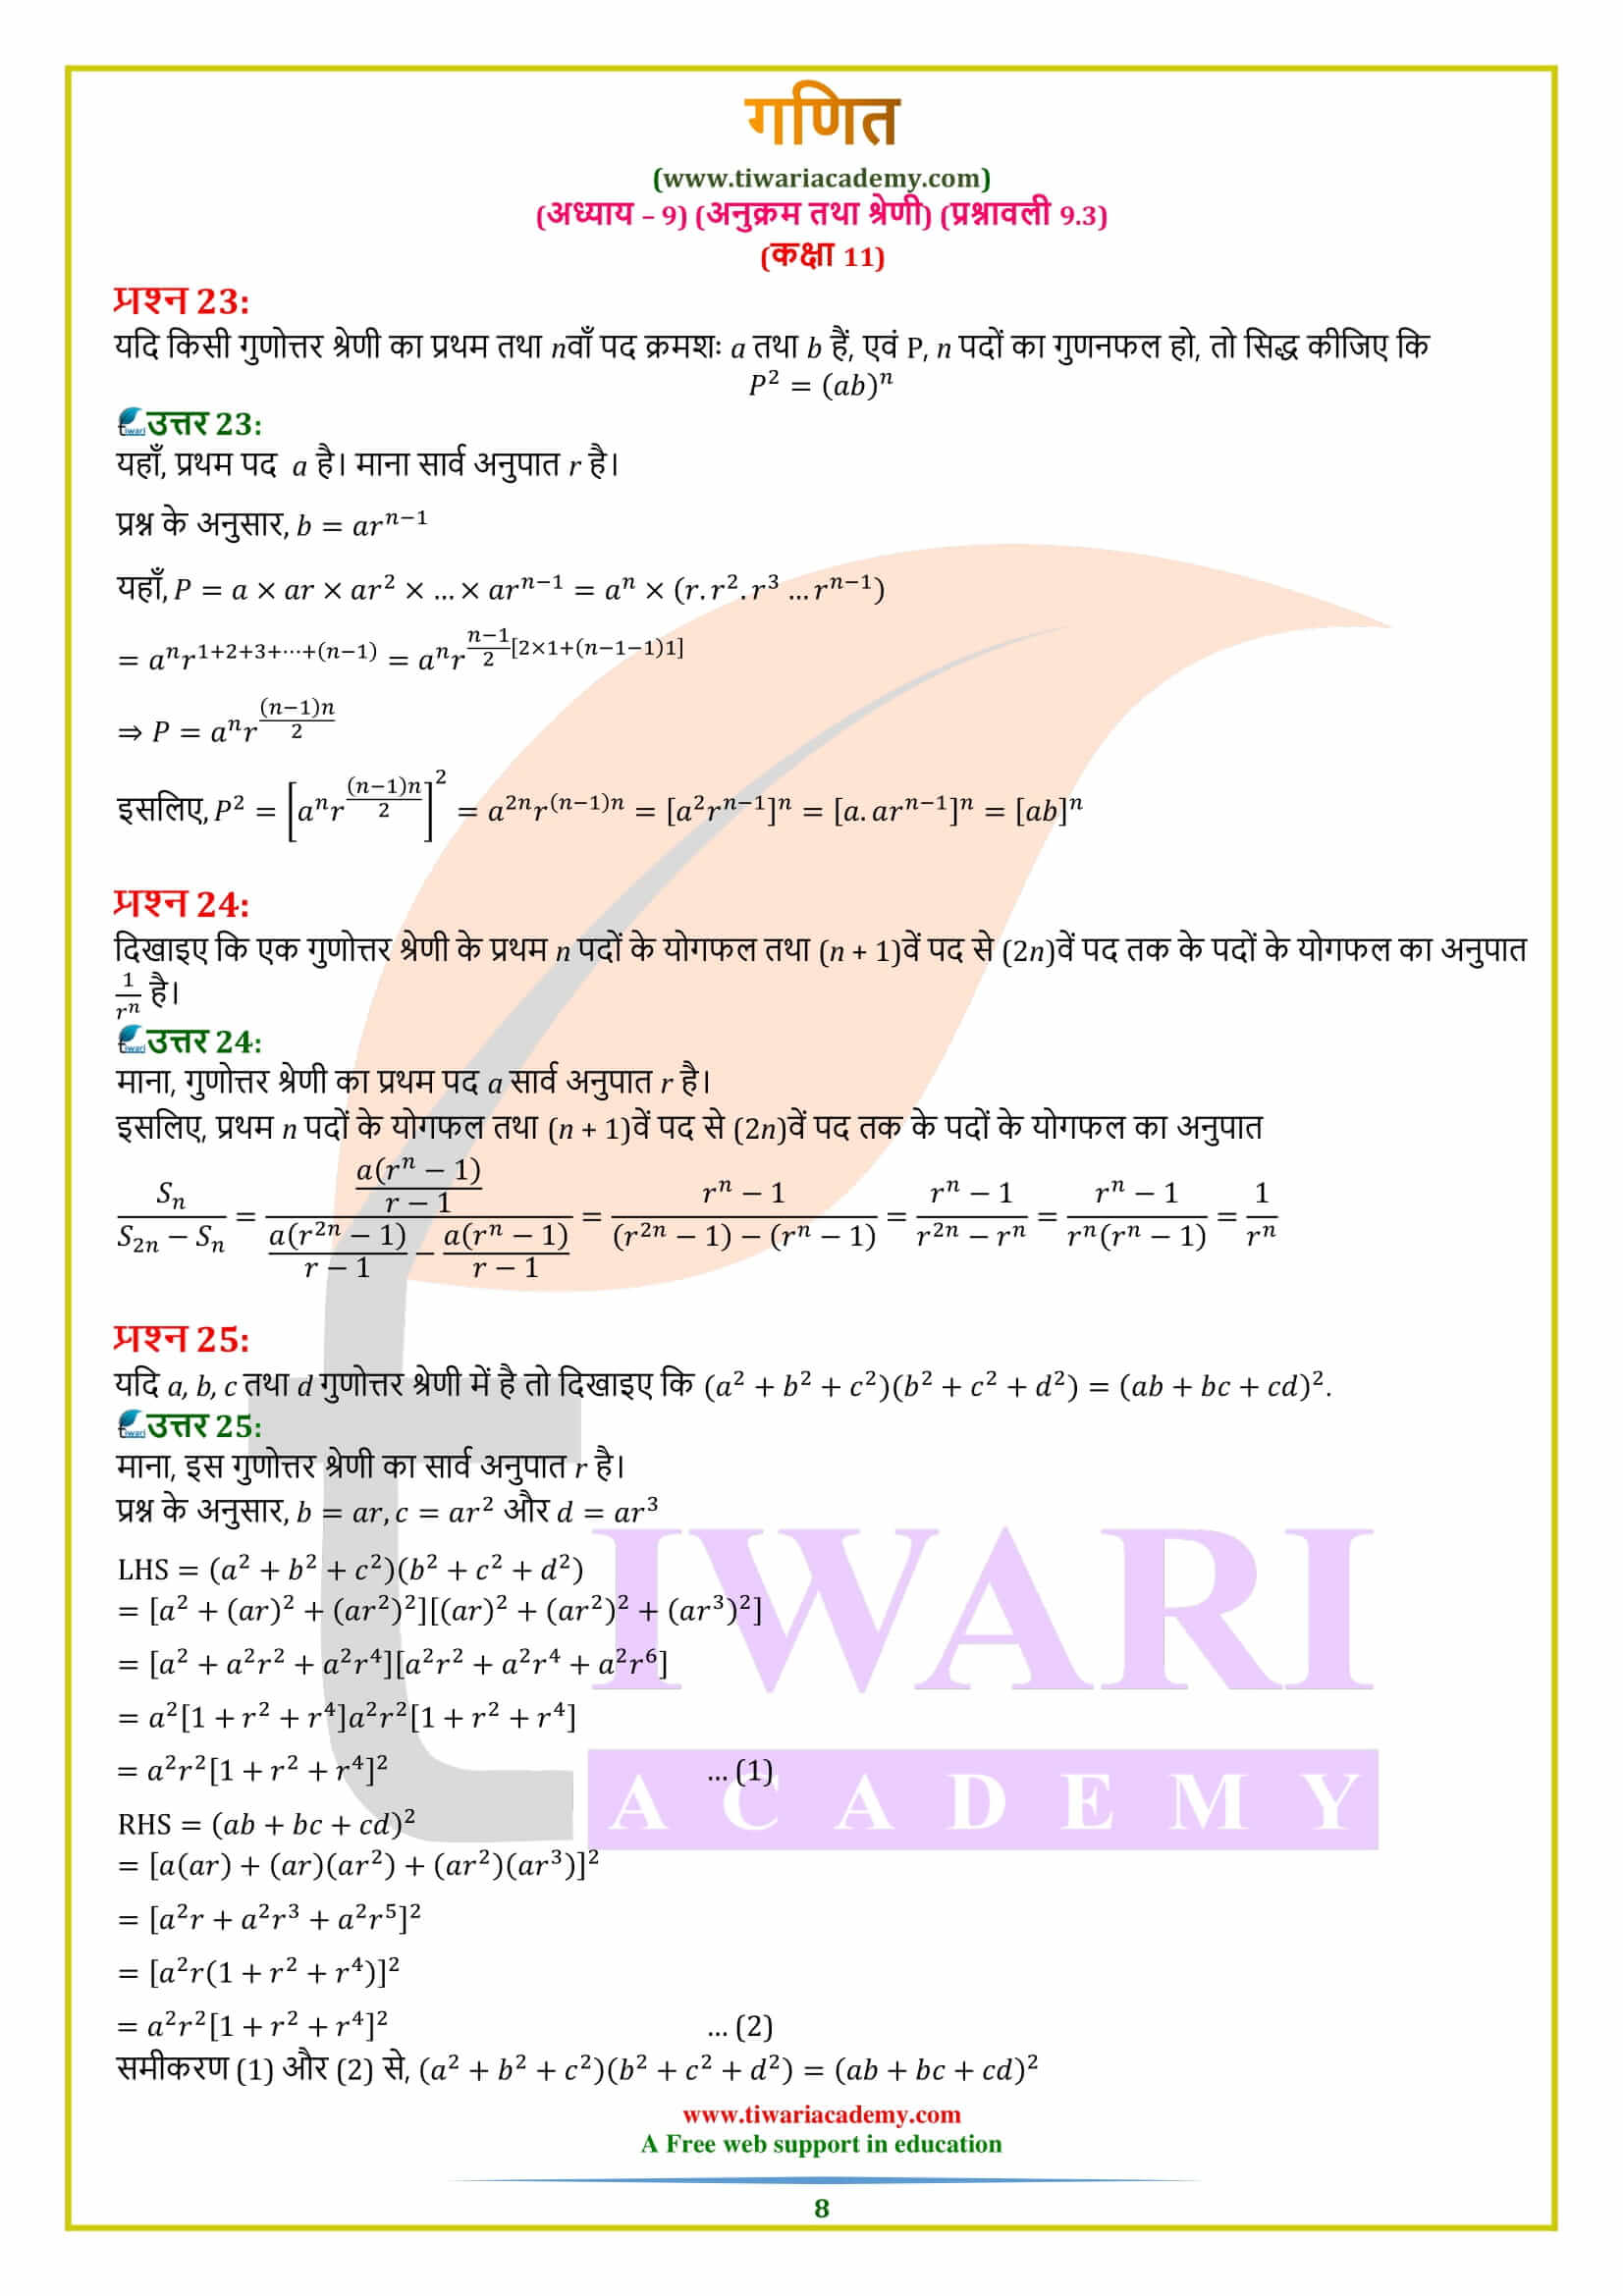 एनसीईआरटी समाधान कक्षा 11 गणित प्रश्नावली 9.3 हिंदी मीडियम